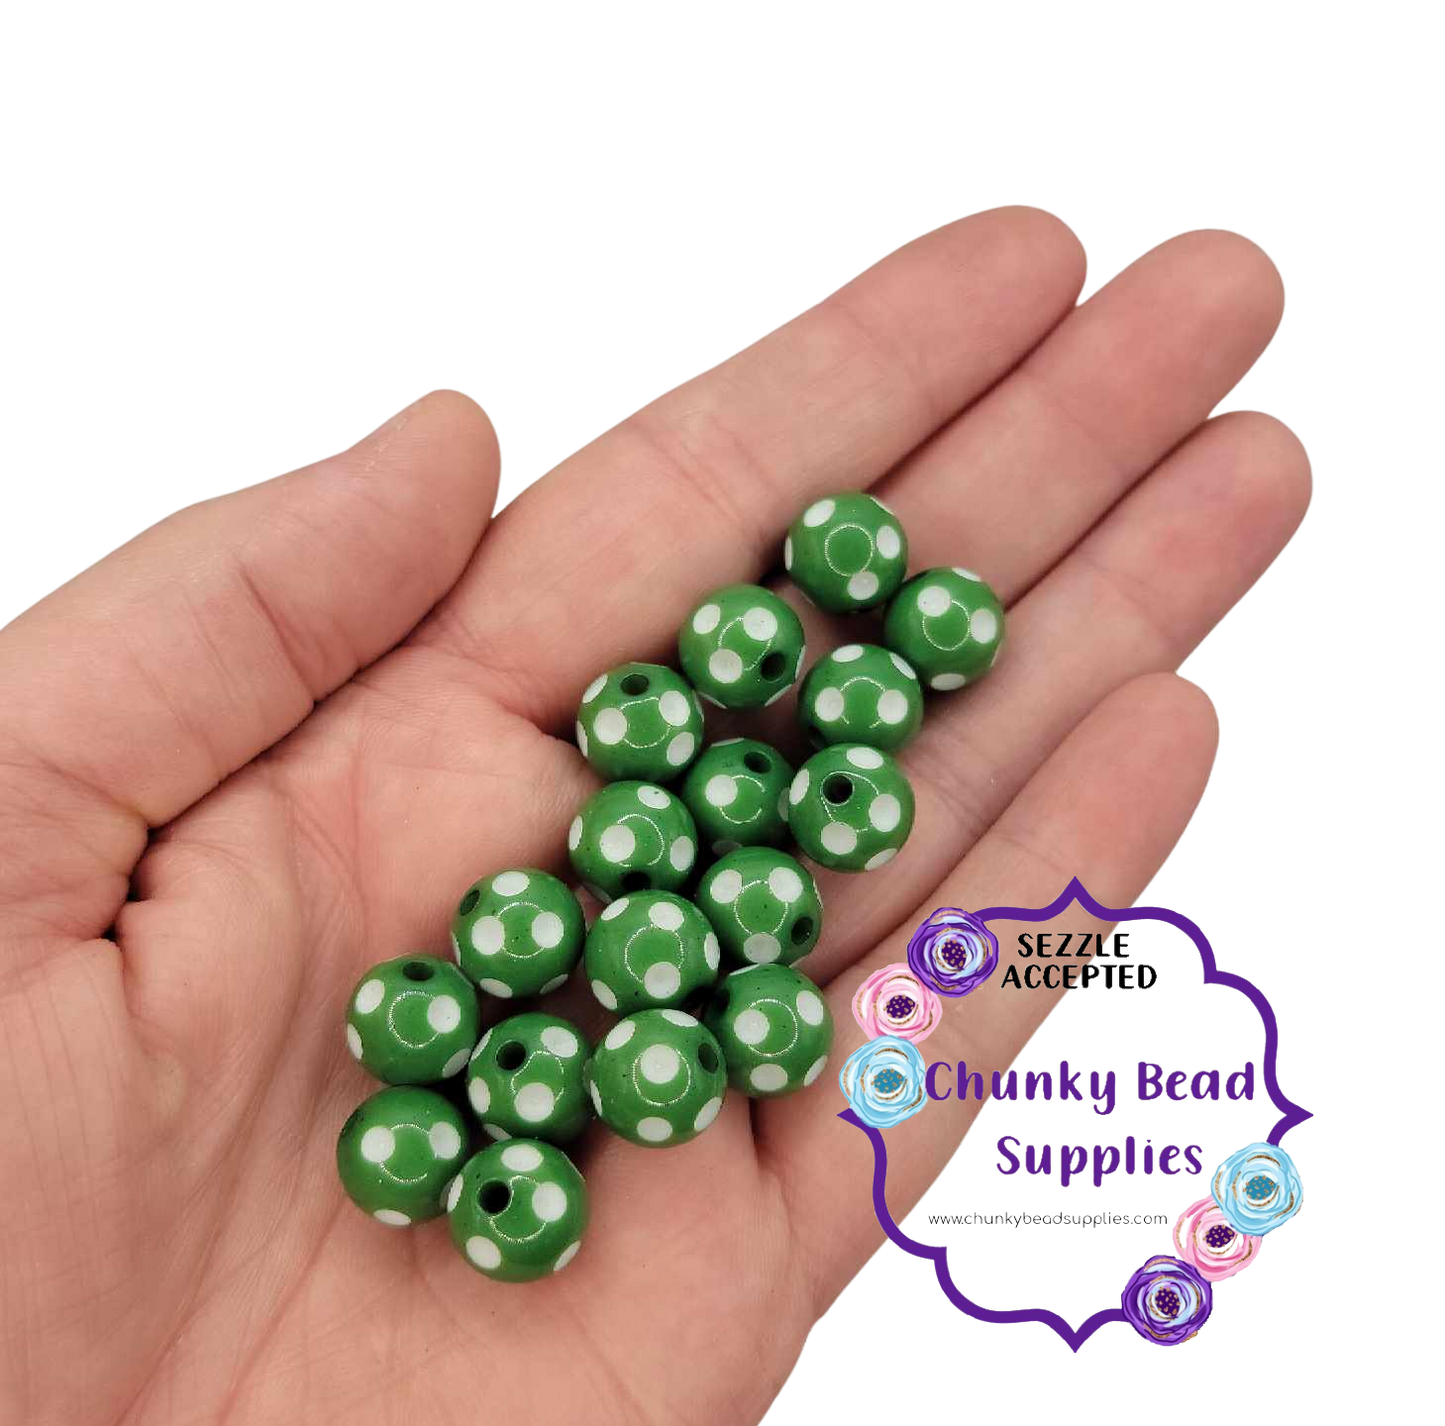 12mm "Christmas Green" Acrylic Polka Dot Beads